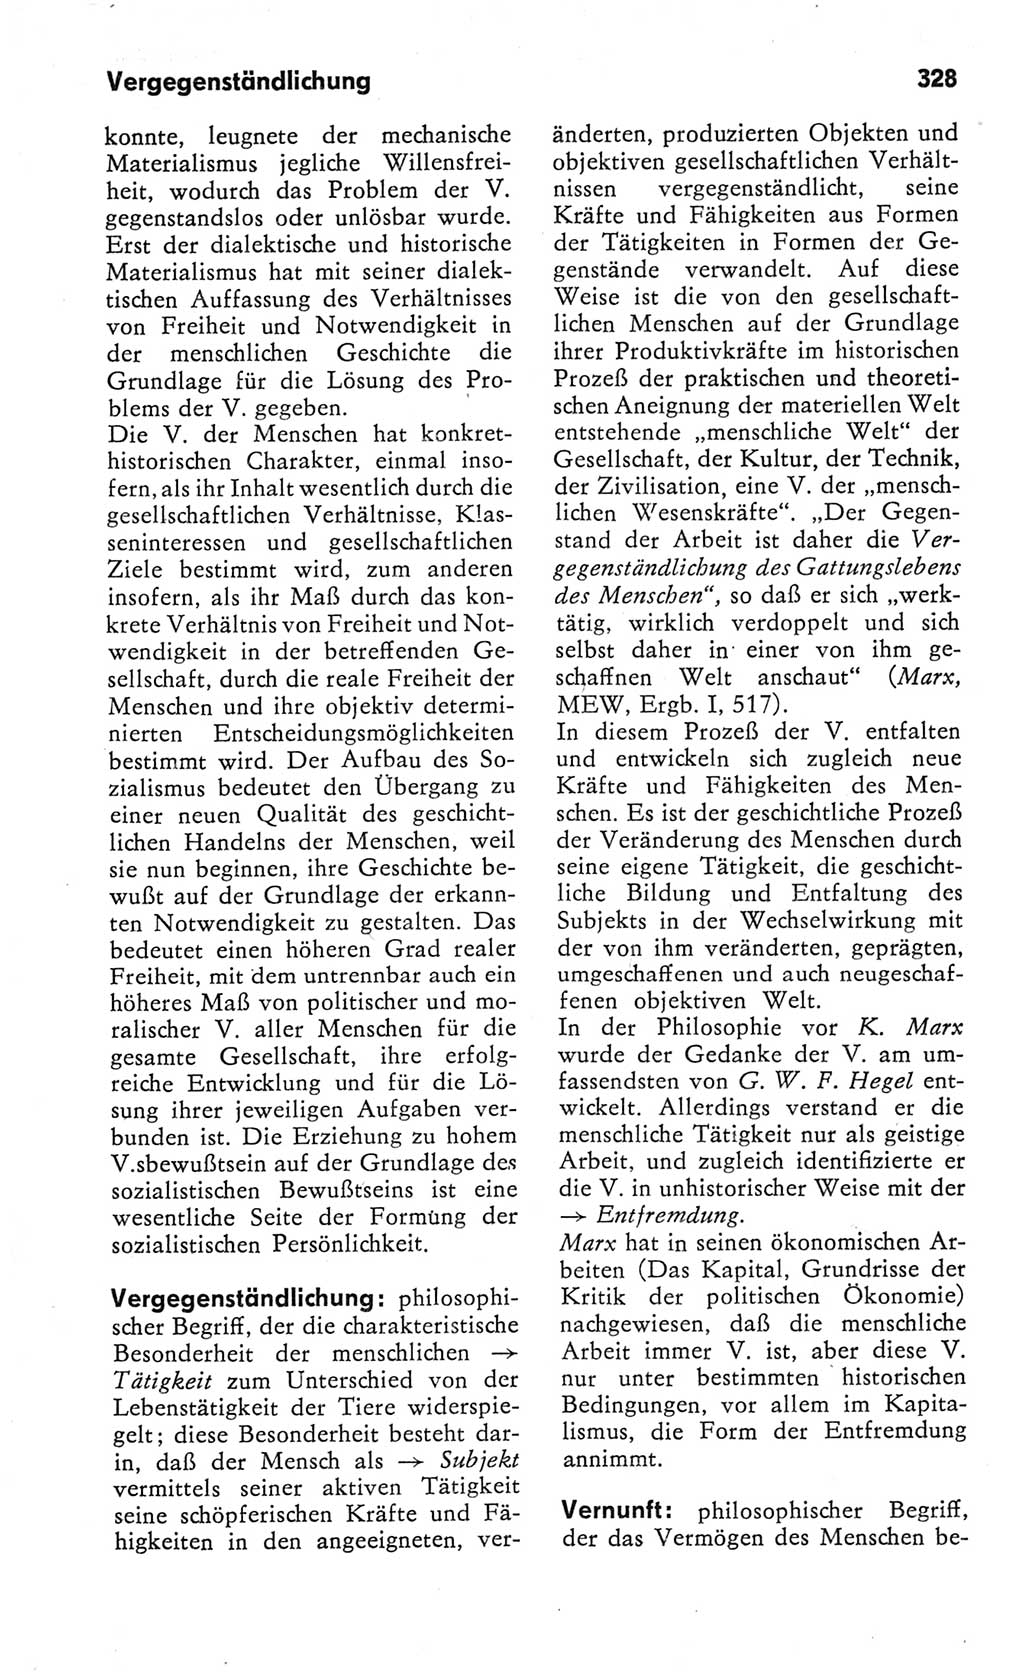 Kleines Wörterbuch der marxistisch-leninistischen Philosophie [Deutsche Demokratische Republik (DDR)] 1982, Seite 328 (Kl. Wb. ML Phil. DDR 1982, S. 328)